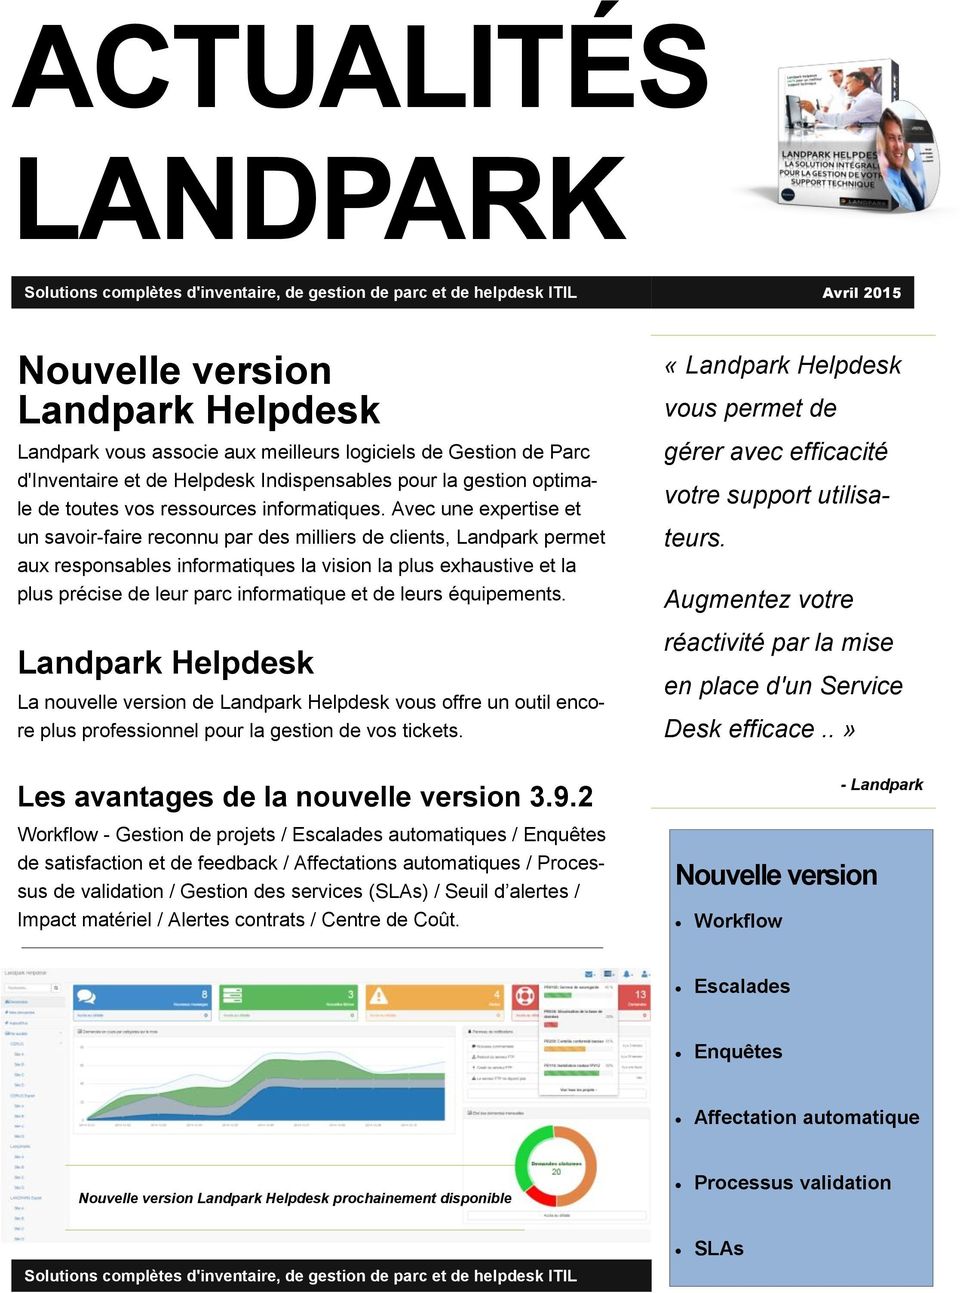 Avec une expertise et un savoir-faire reconnu par des milliers de clients, Landpark permet aux responsables informatiques la vision la plus exhaustive et la plus précise de leur parc informatique et